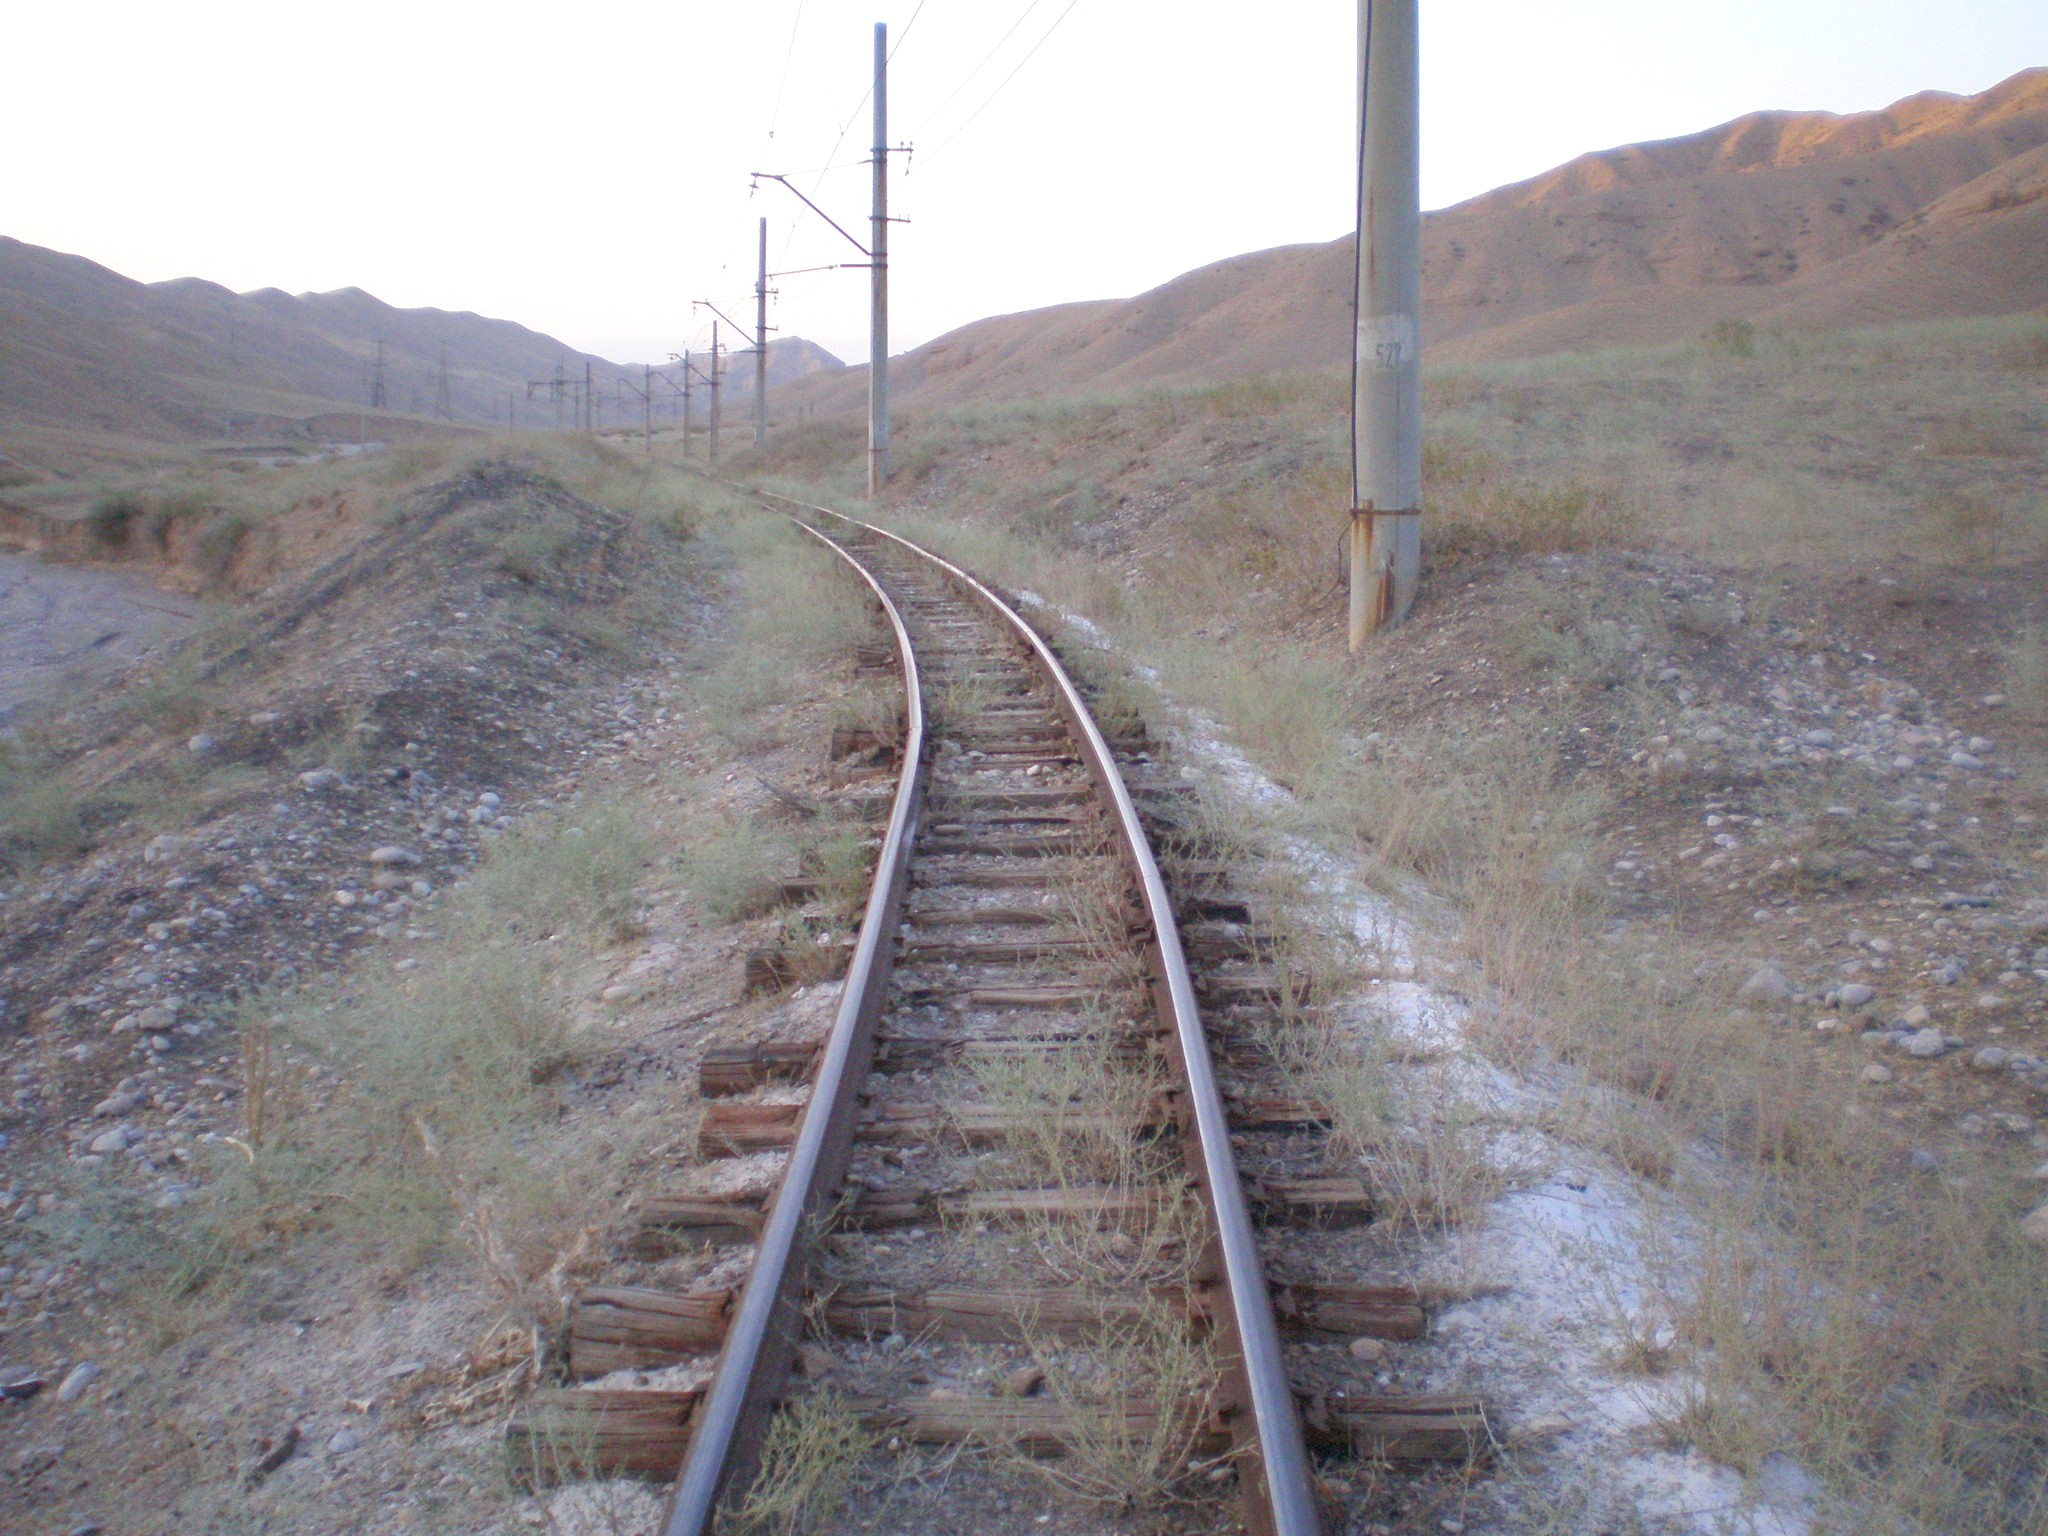 Сулюктинская узкоколейная железная дорога  —  фотографии, сделанные в 2008 году (часть 30)